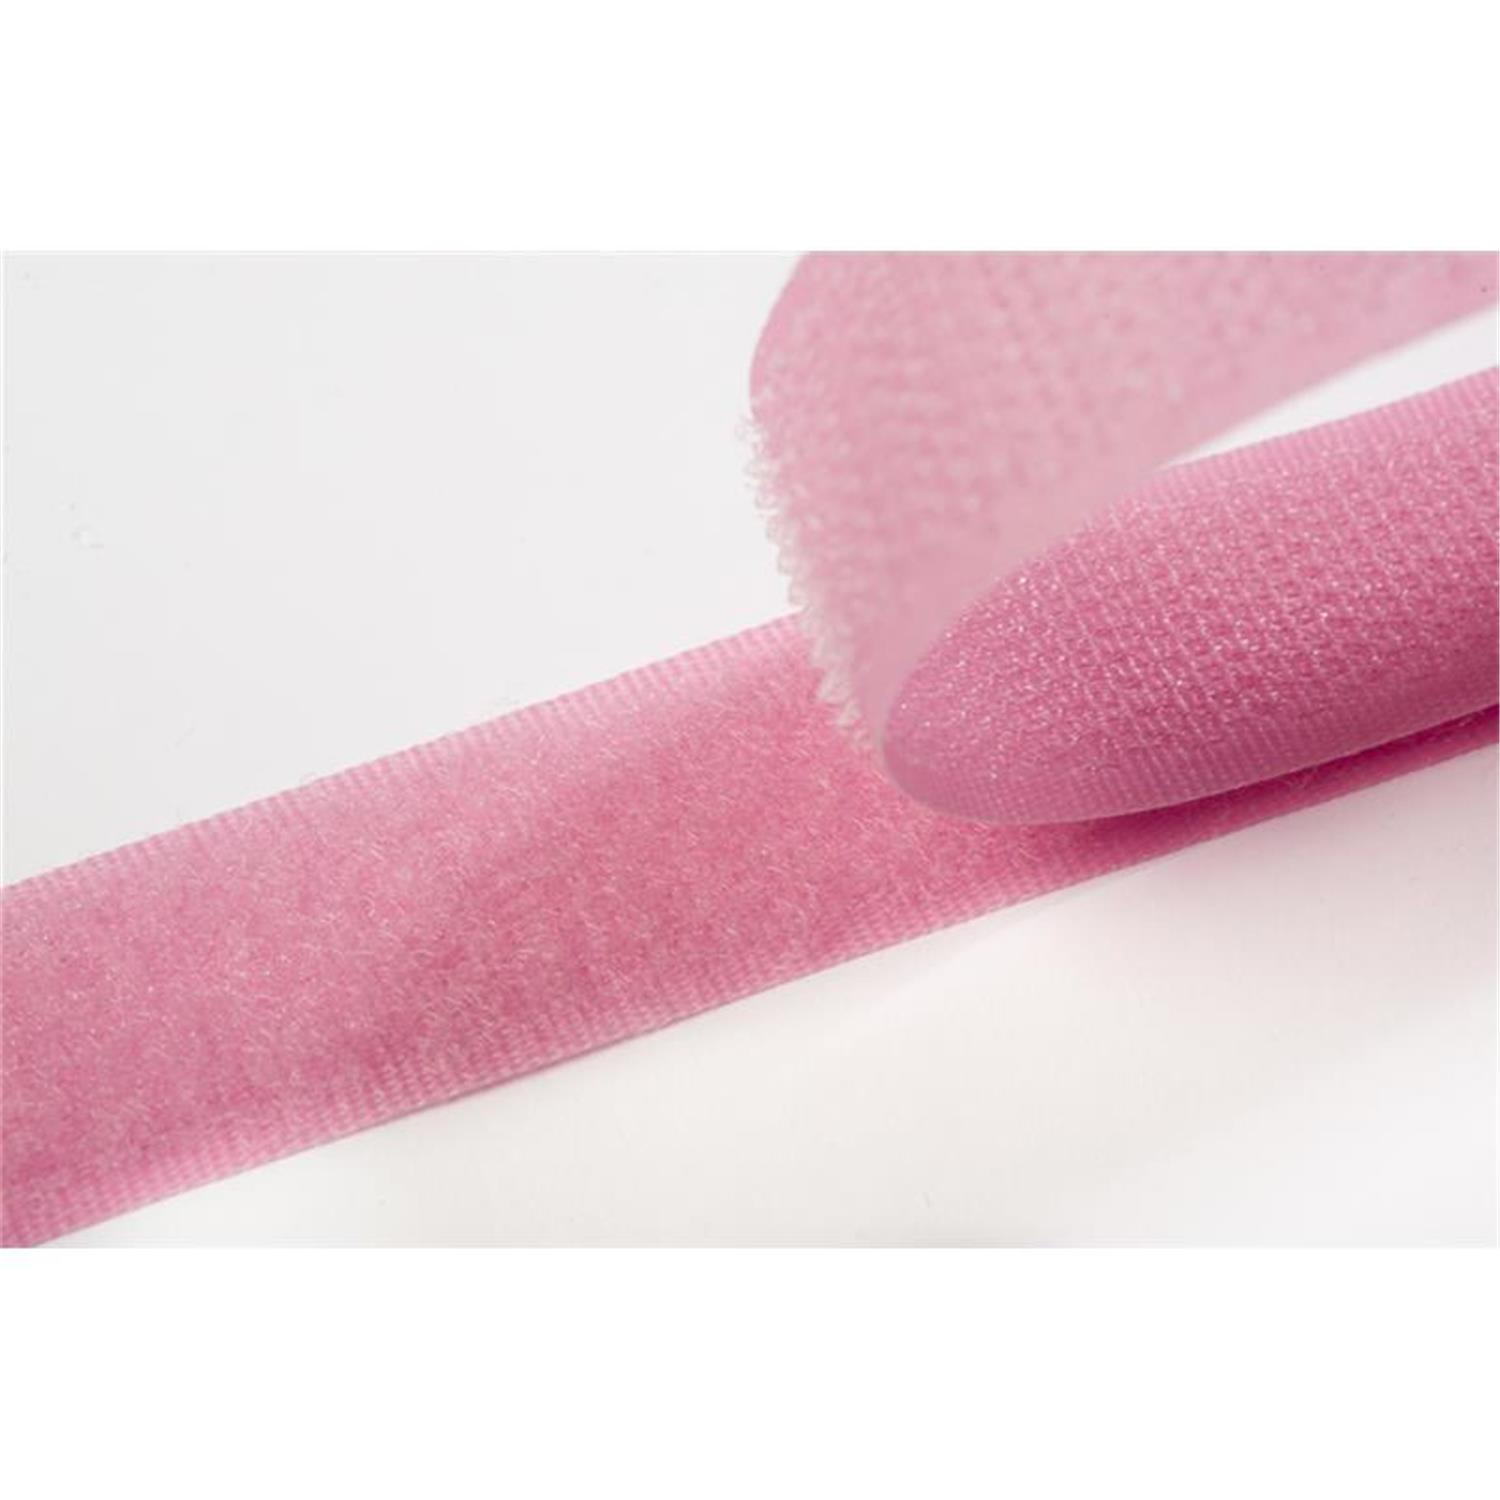 Klettband zum aufnähen, 20 mm, rosa/pink #08 25 Meter